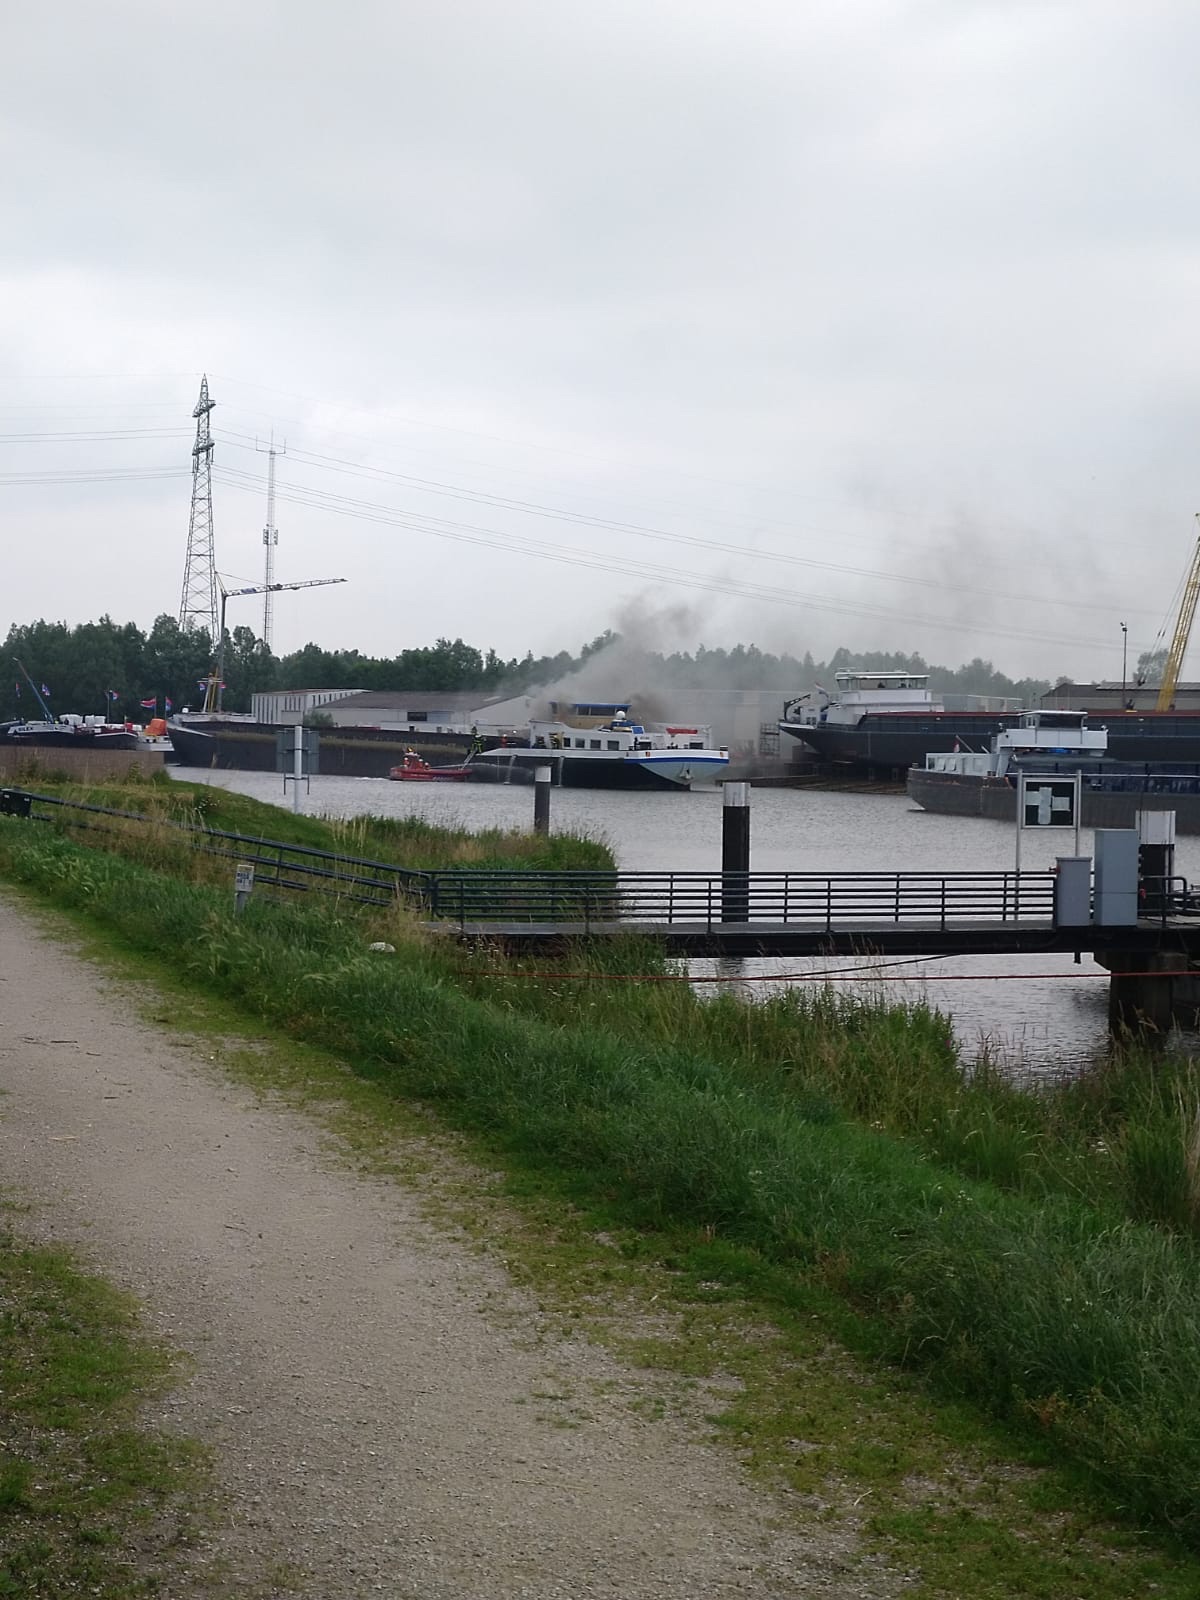 Rookwolken slaan uit de voormalige tanker die voor ombouw bij de werf van Ruijtenberg ligt (Foto RWS Gezagvoerder Arco)